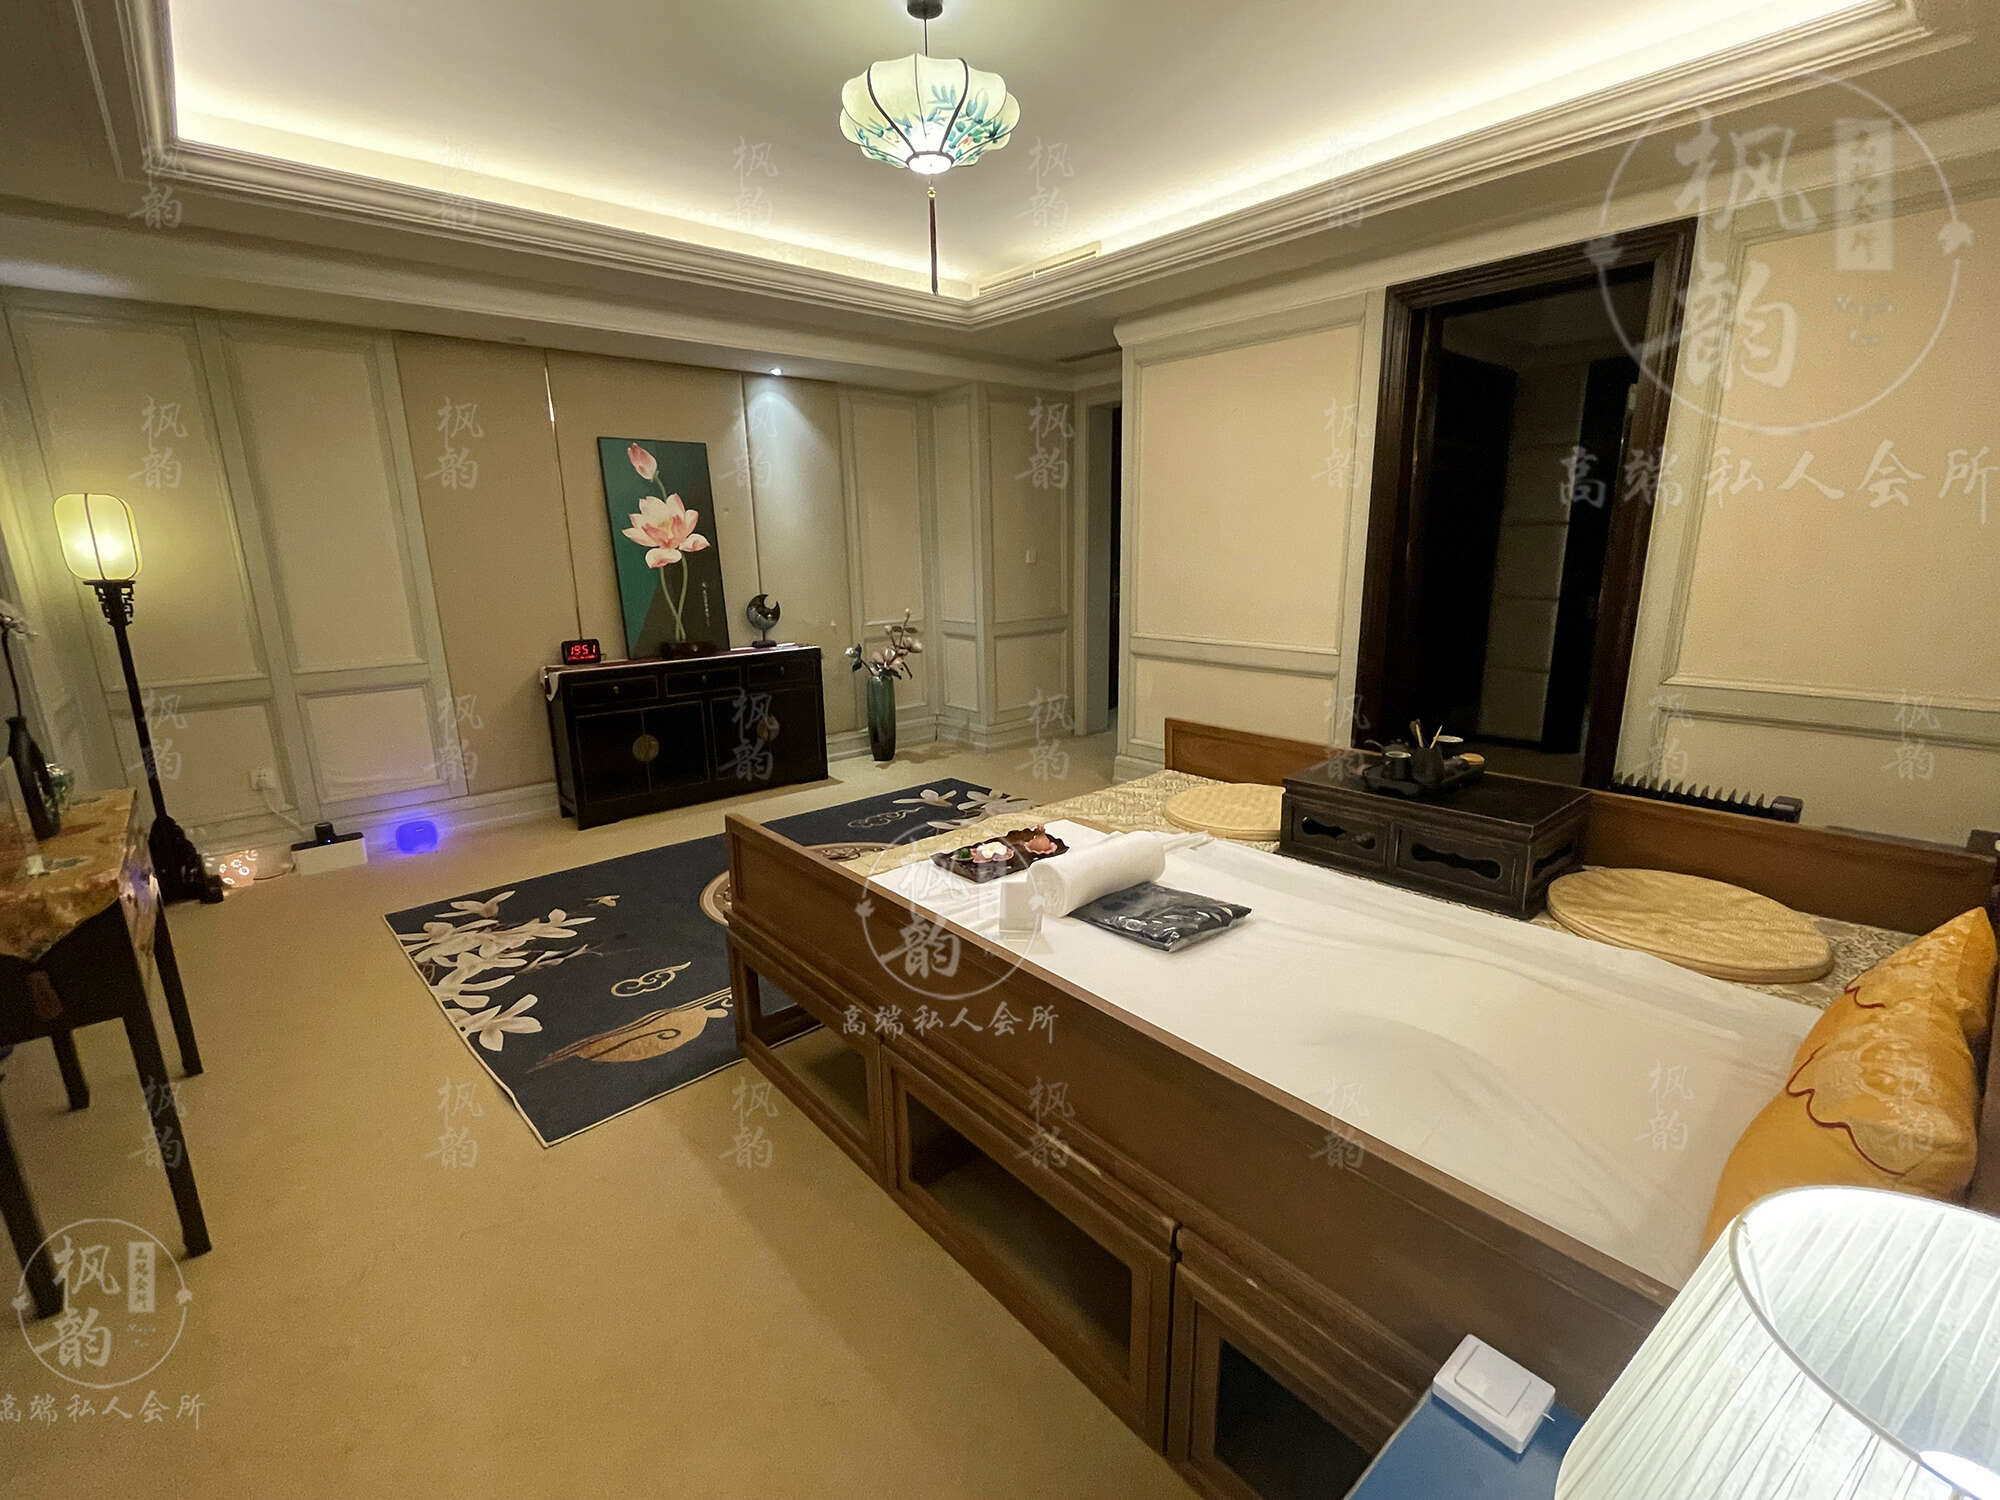 石家庄天津渔阳鼓楼人气优选沐足会馆房间也很干净，舒适的spa体验